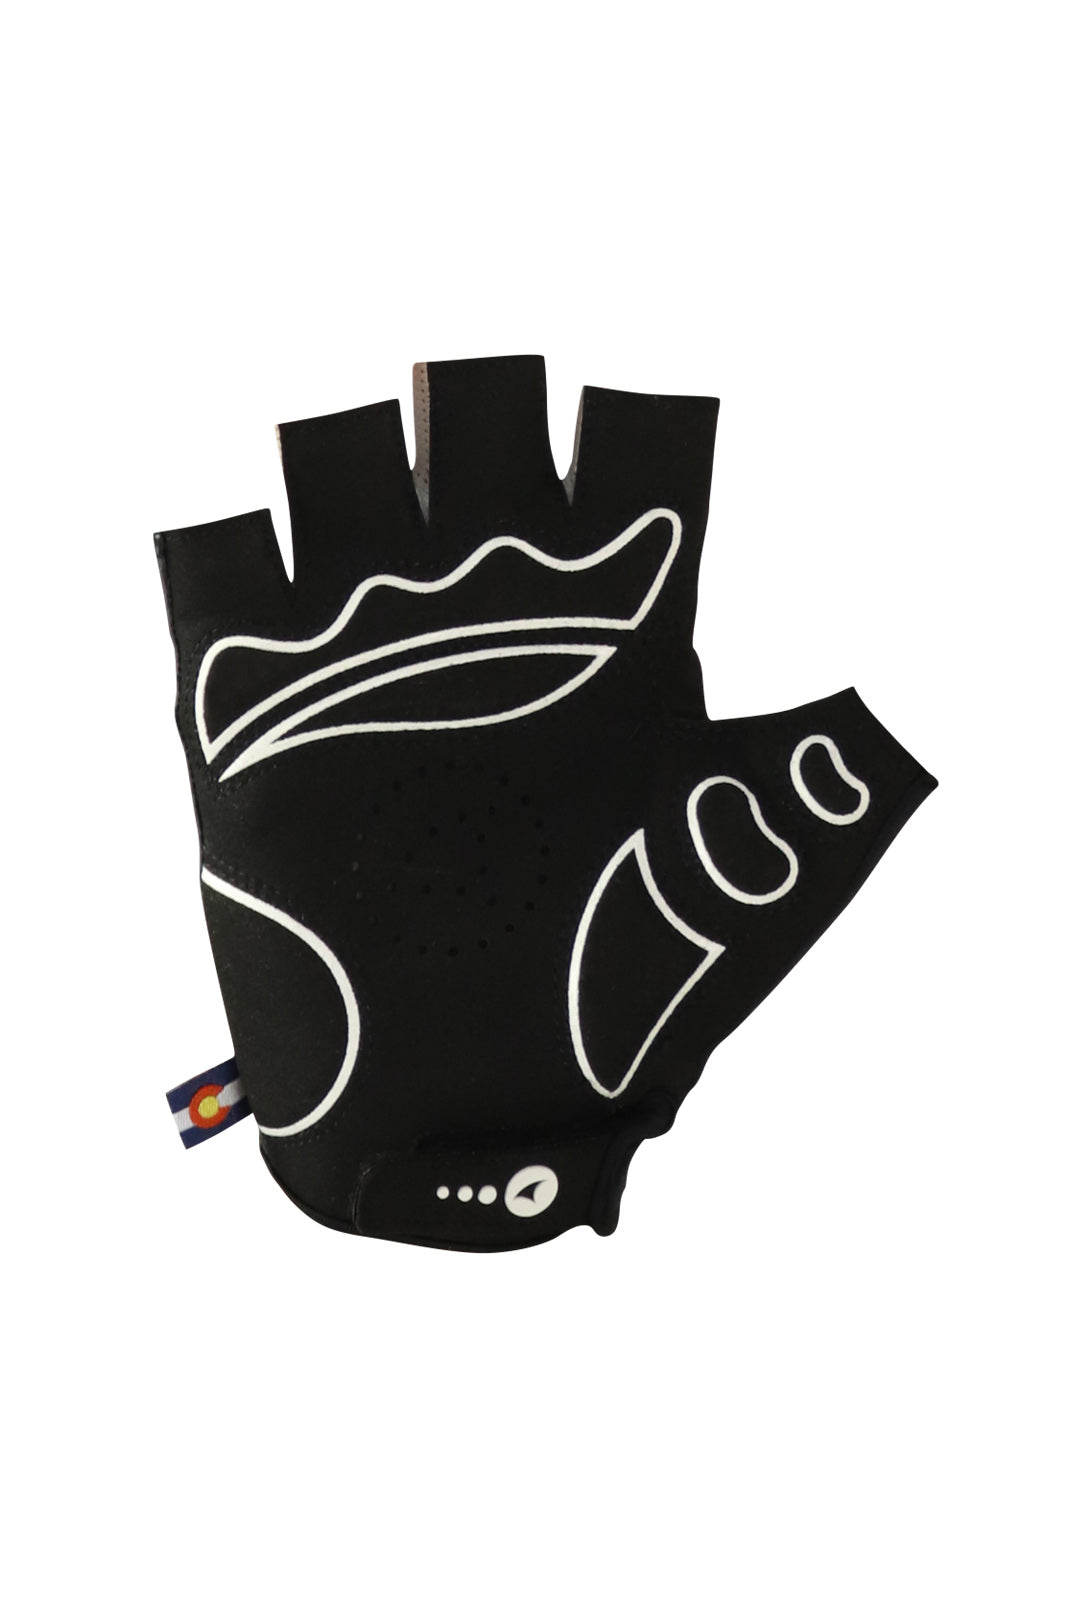 Black Bike Gloves Palm View